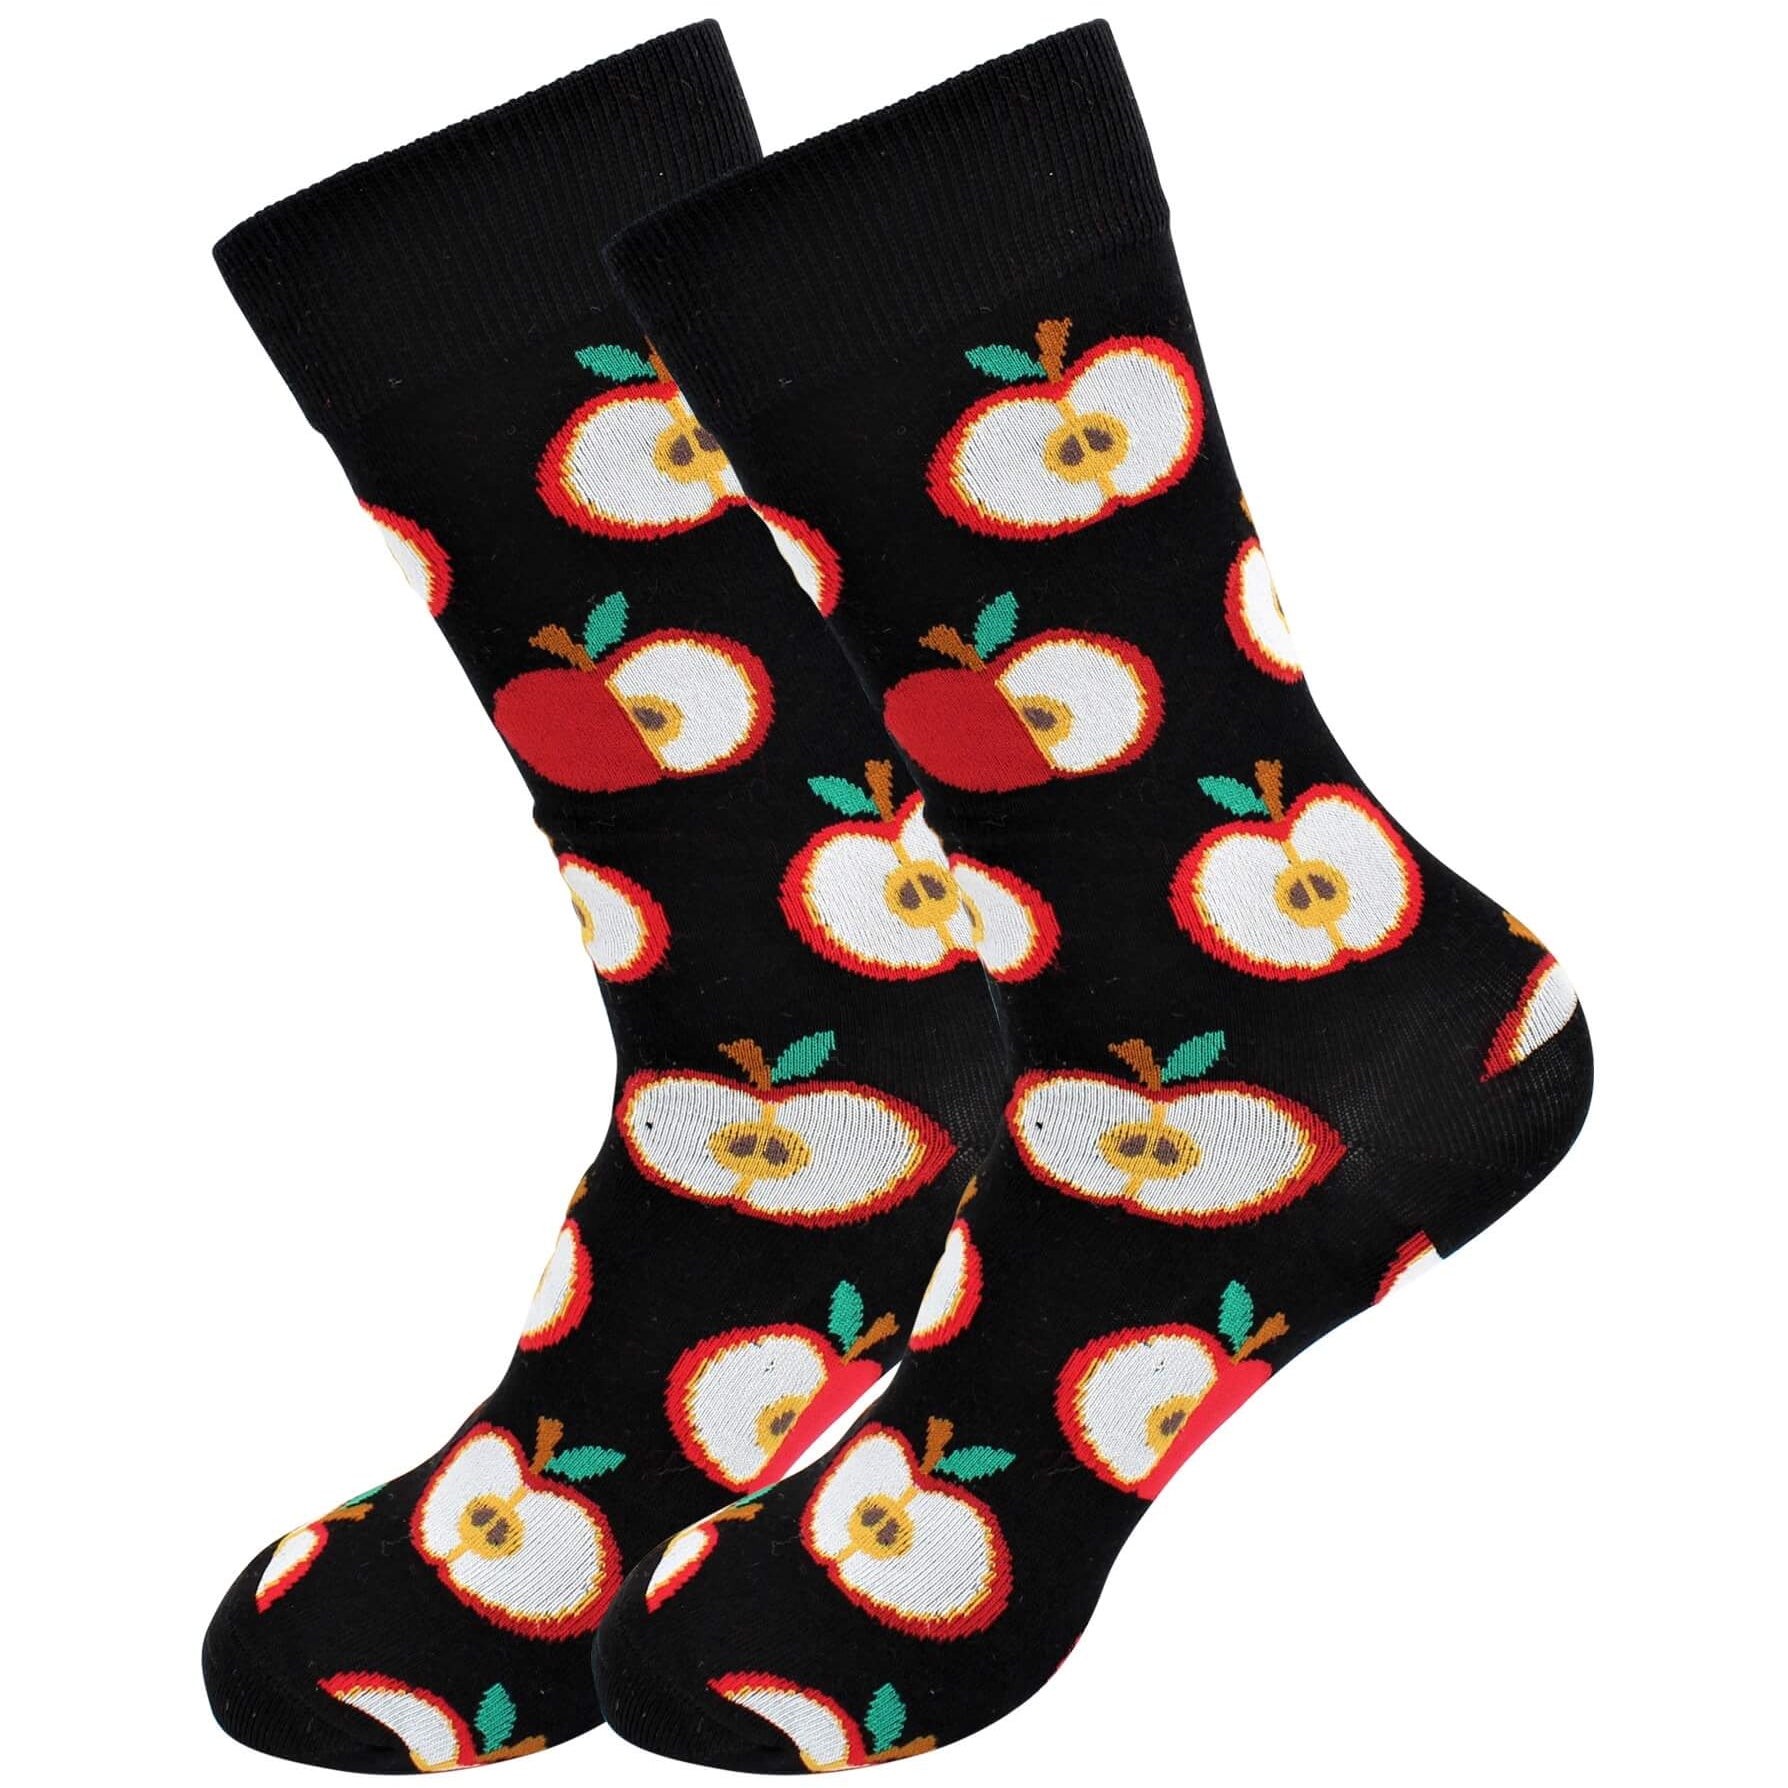 Real Sic - Apple Socks